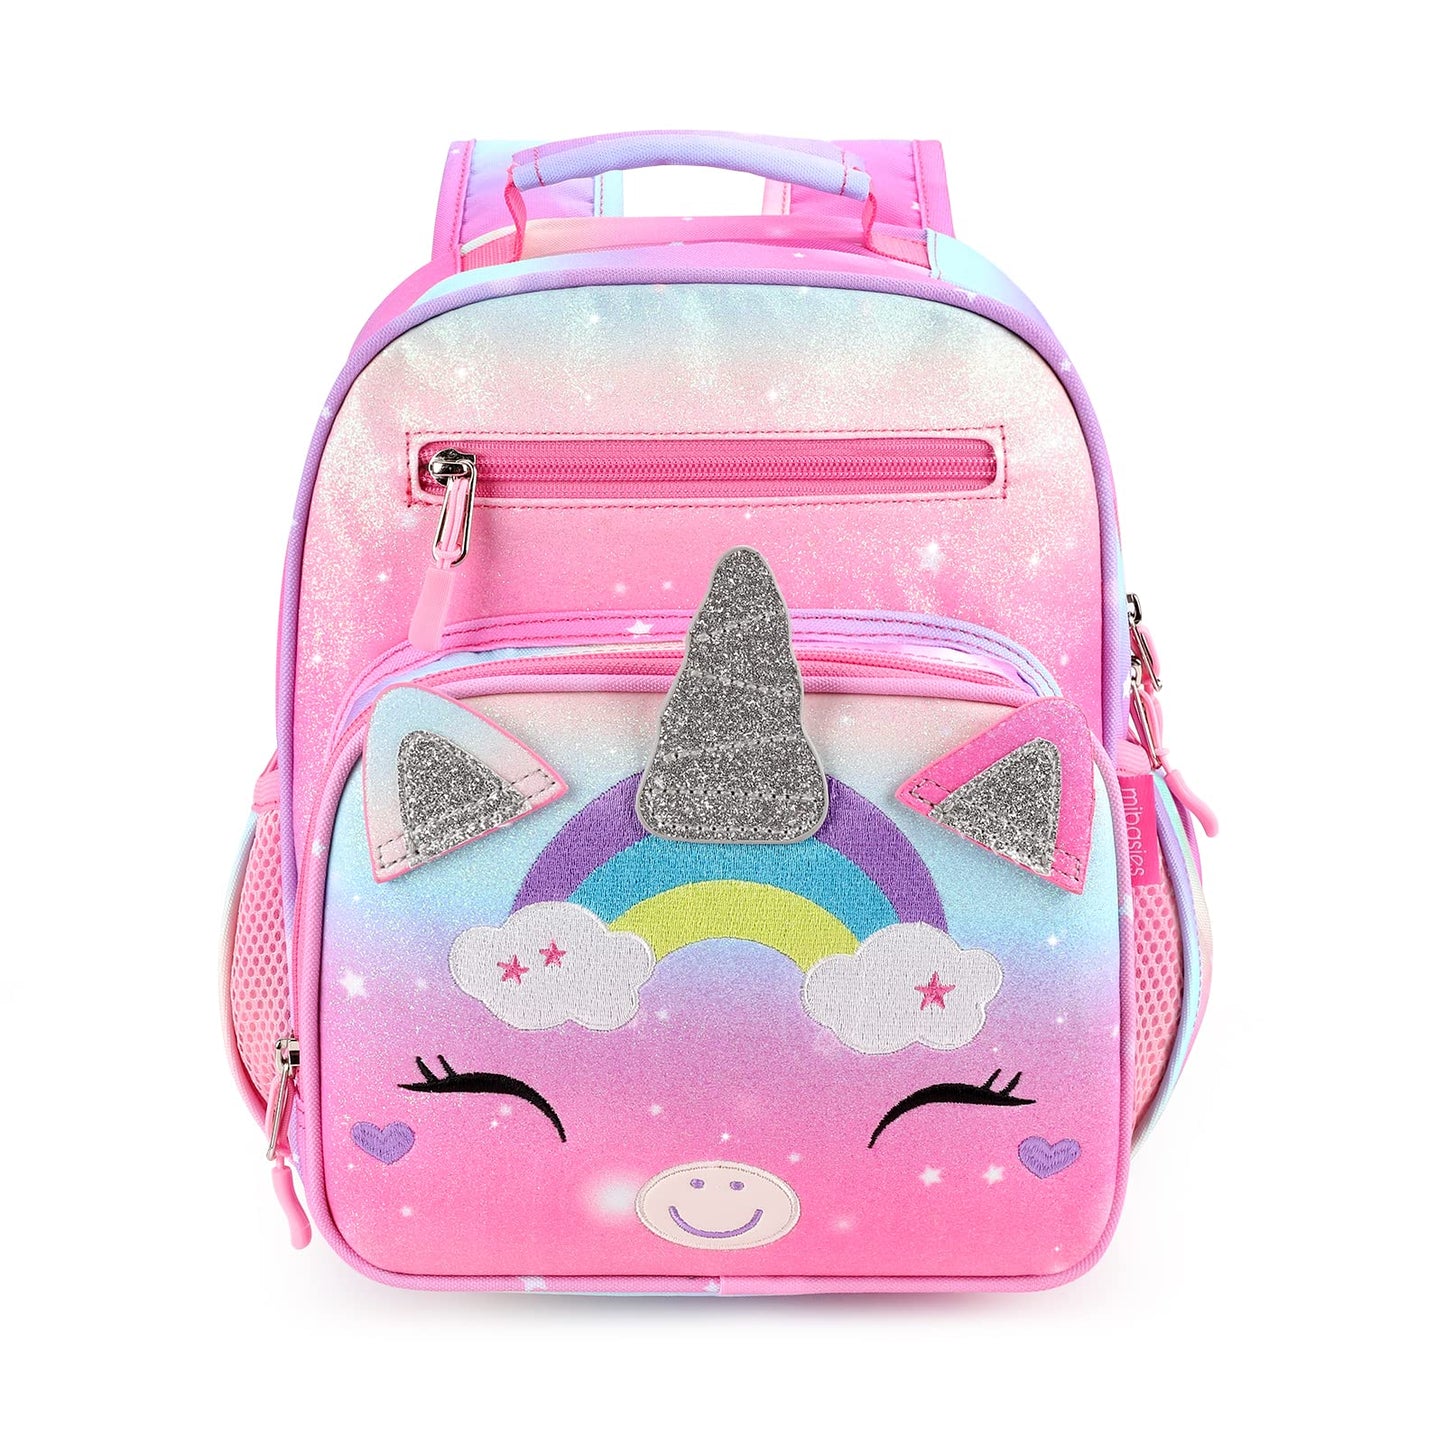 Colorful Unicorn schoolbag Mibasies 9L Unicorn Rainbow 